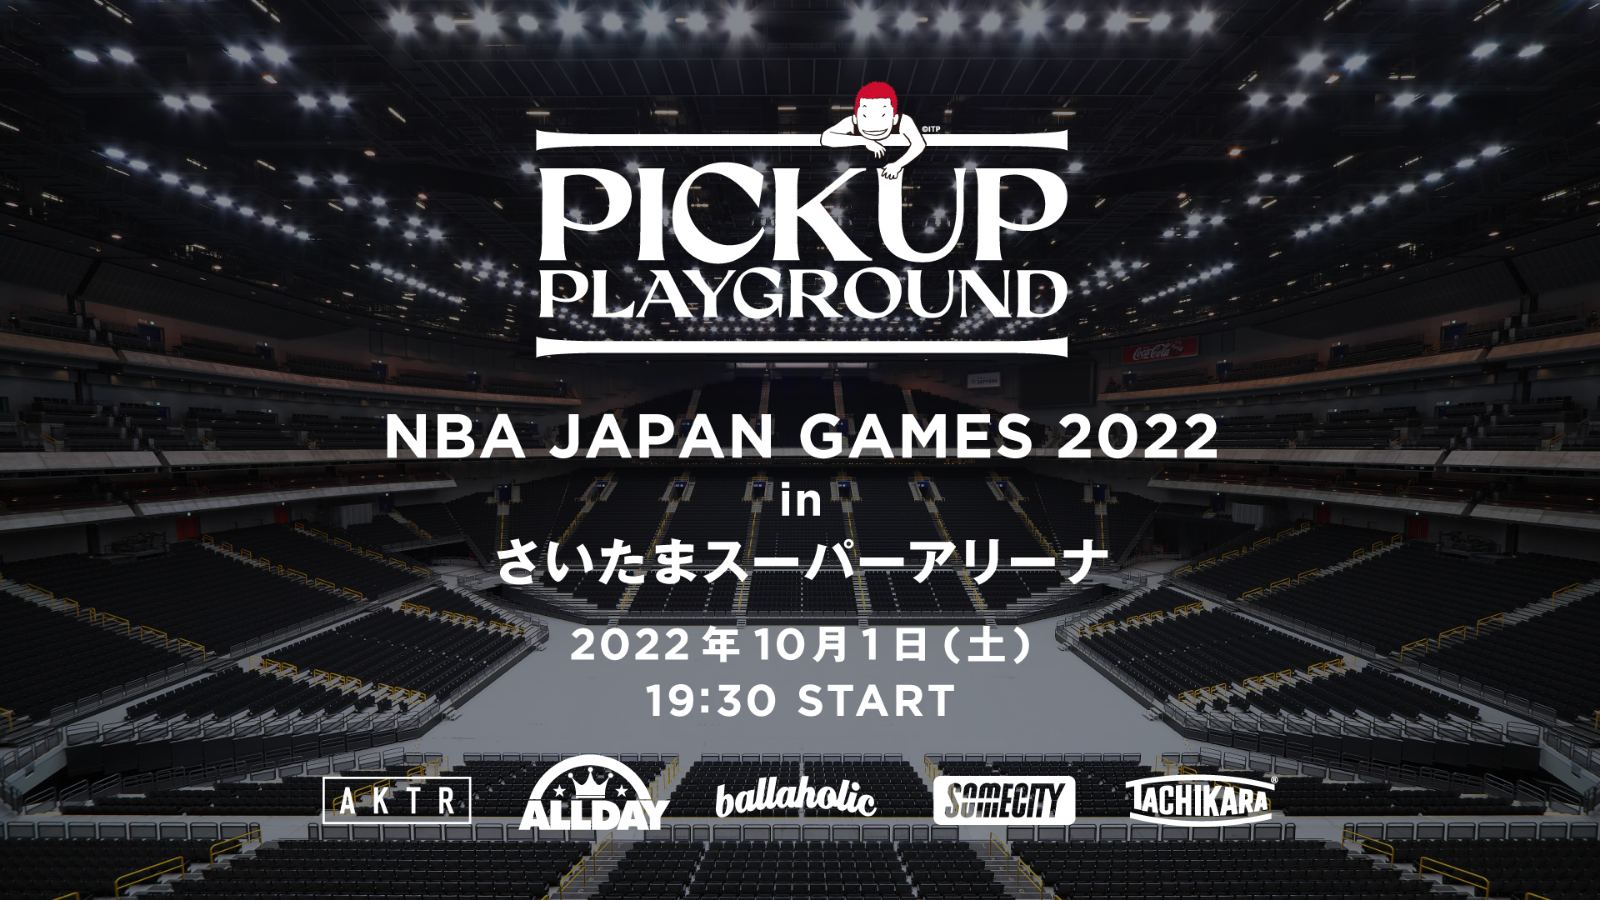 【お知らせ】「NBA Japan Games 2022」でPICK UP PLAYGROUNDの開催が決定